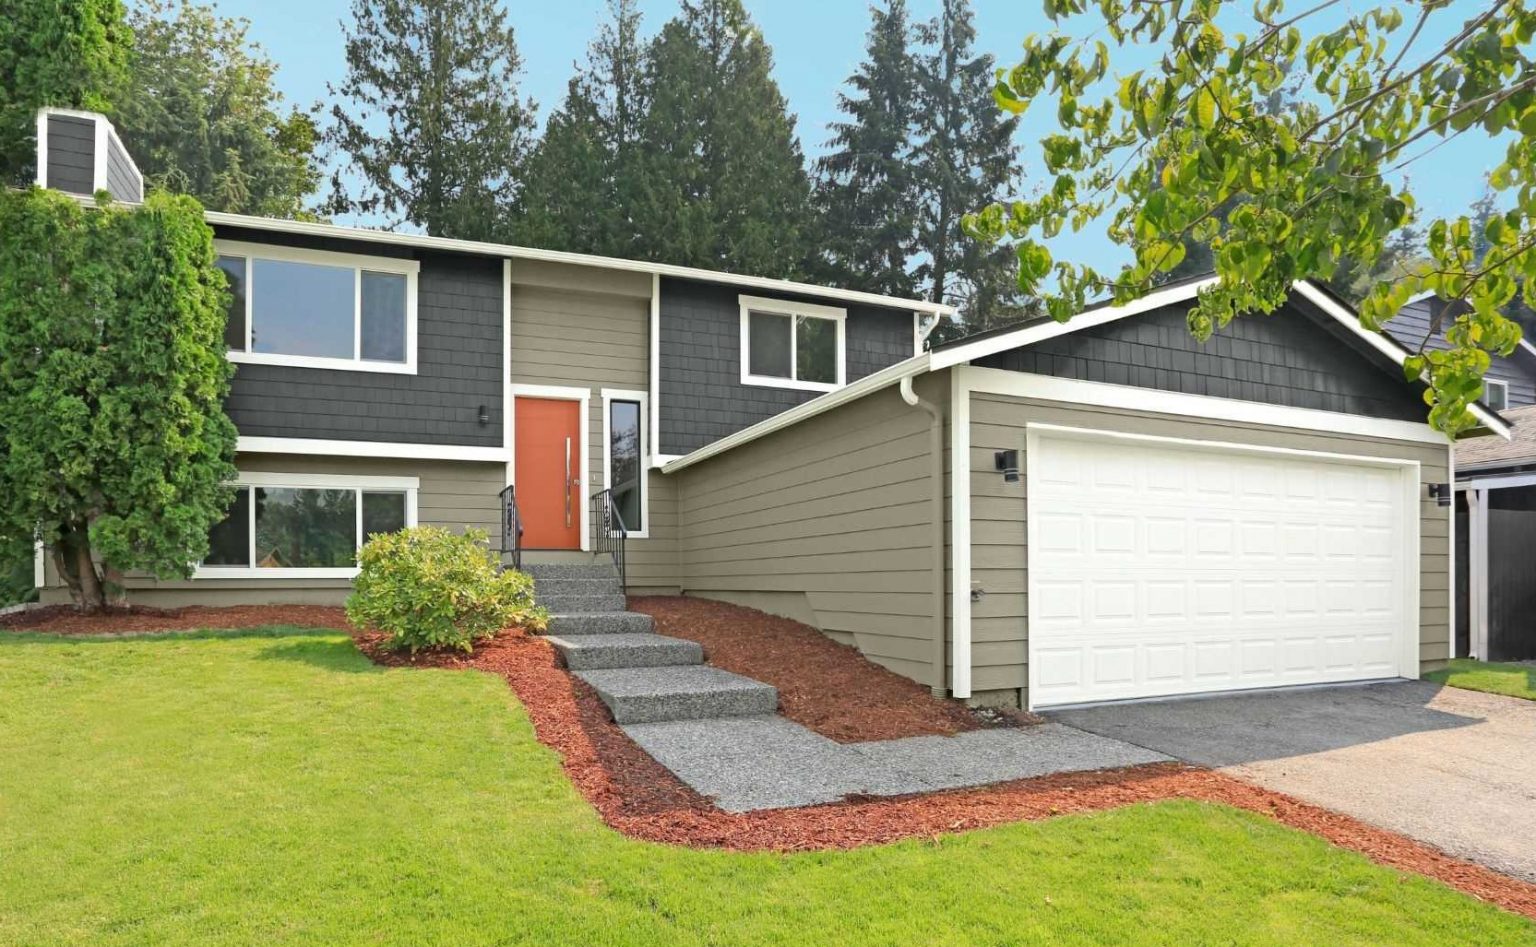 L'extérieur d'une maison à deux niveaux de style Ranch avec des planchettes en gris foncé et un revêtement vert terreux, ainsi qu'une porte en orange vif